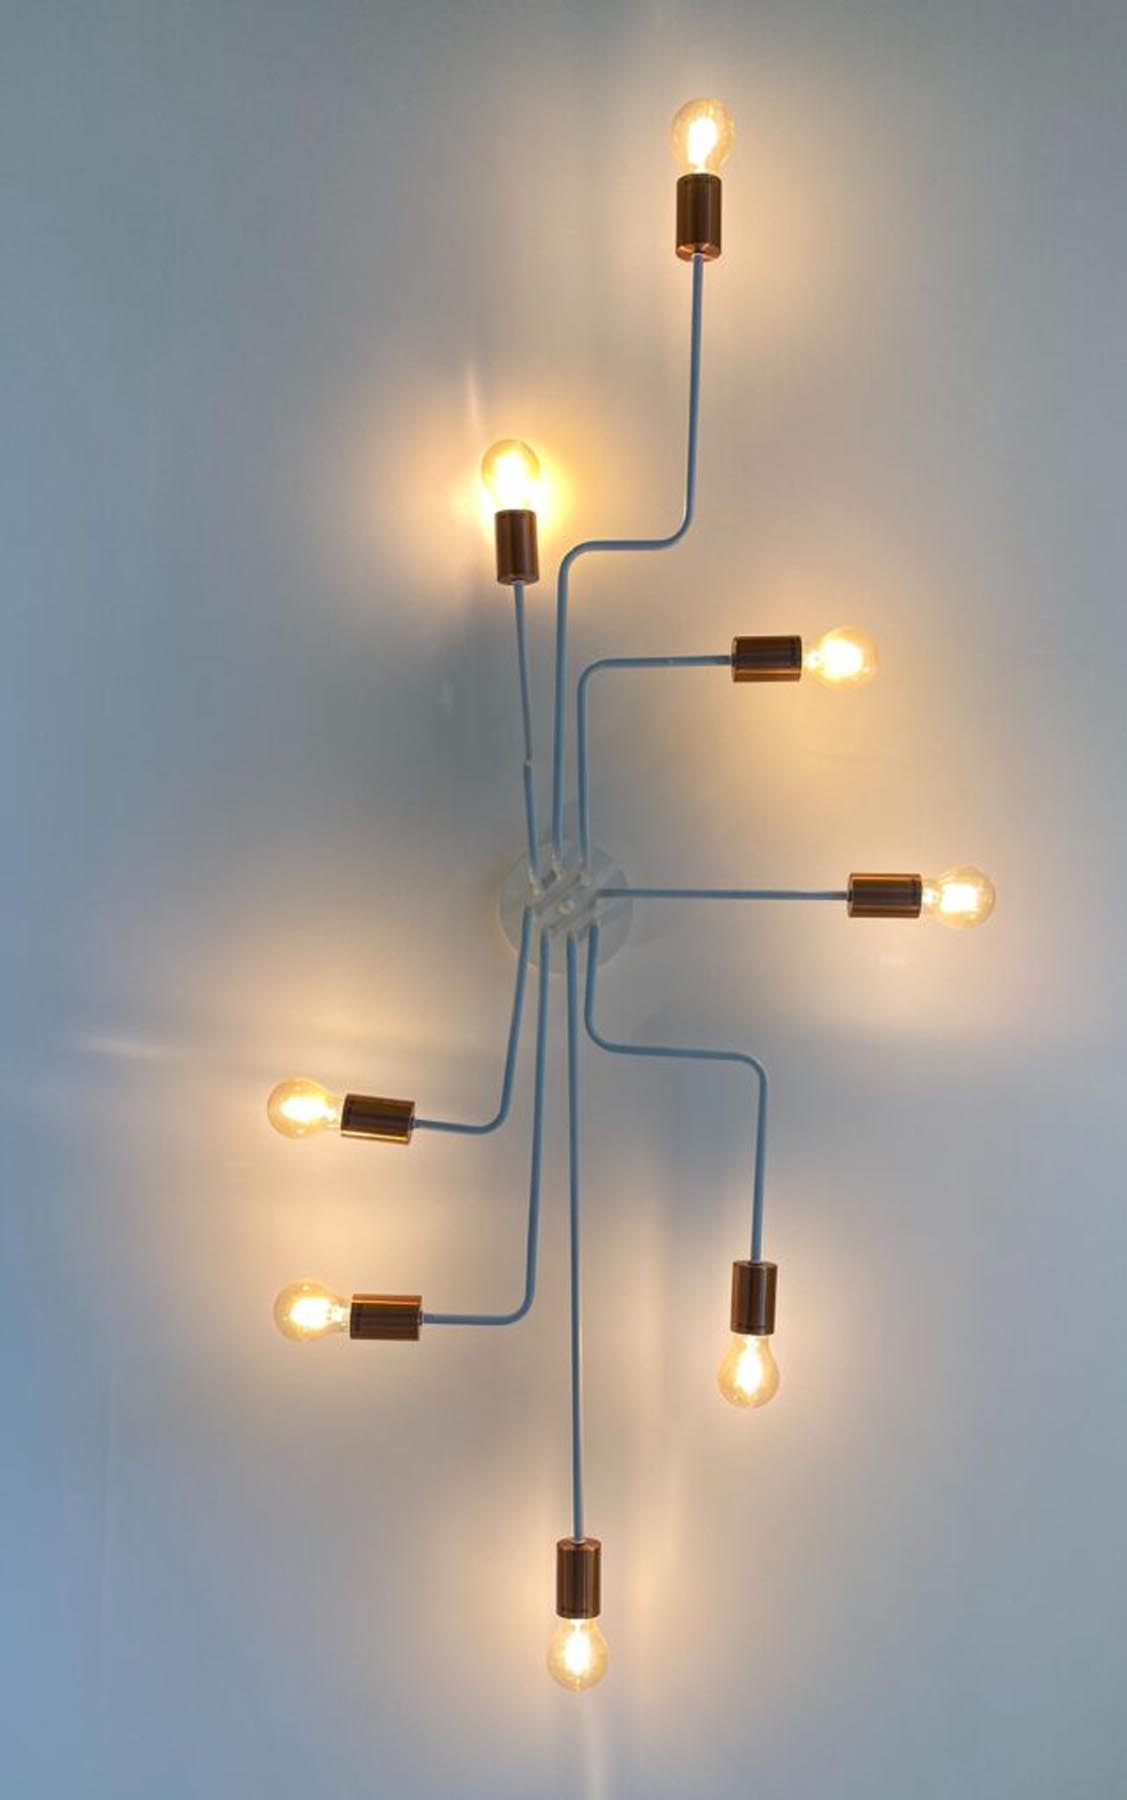 Eine moderne Leuchte führt in verschiedene Richtungen geschwungene Glühbirnen